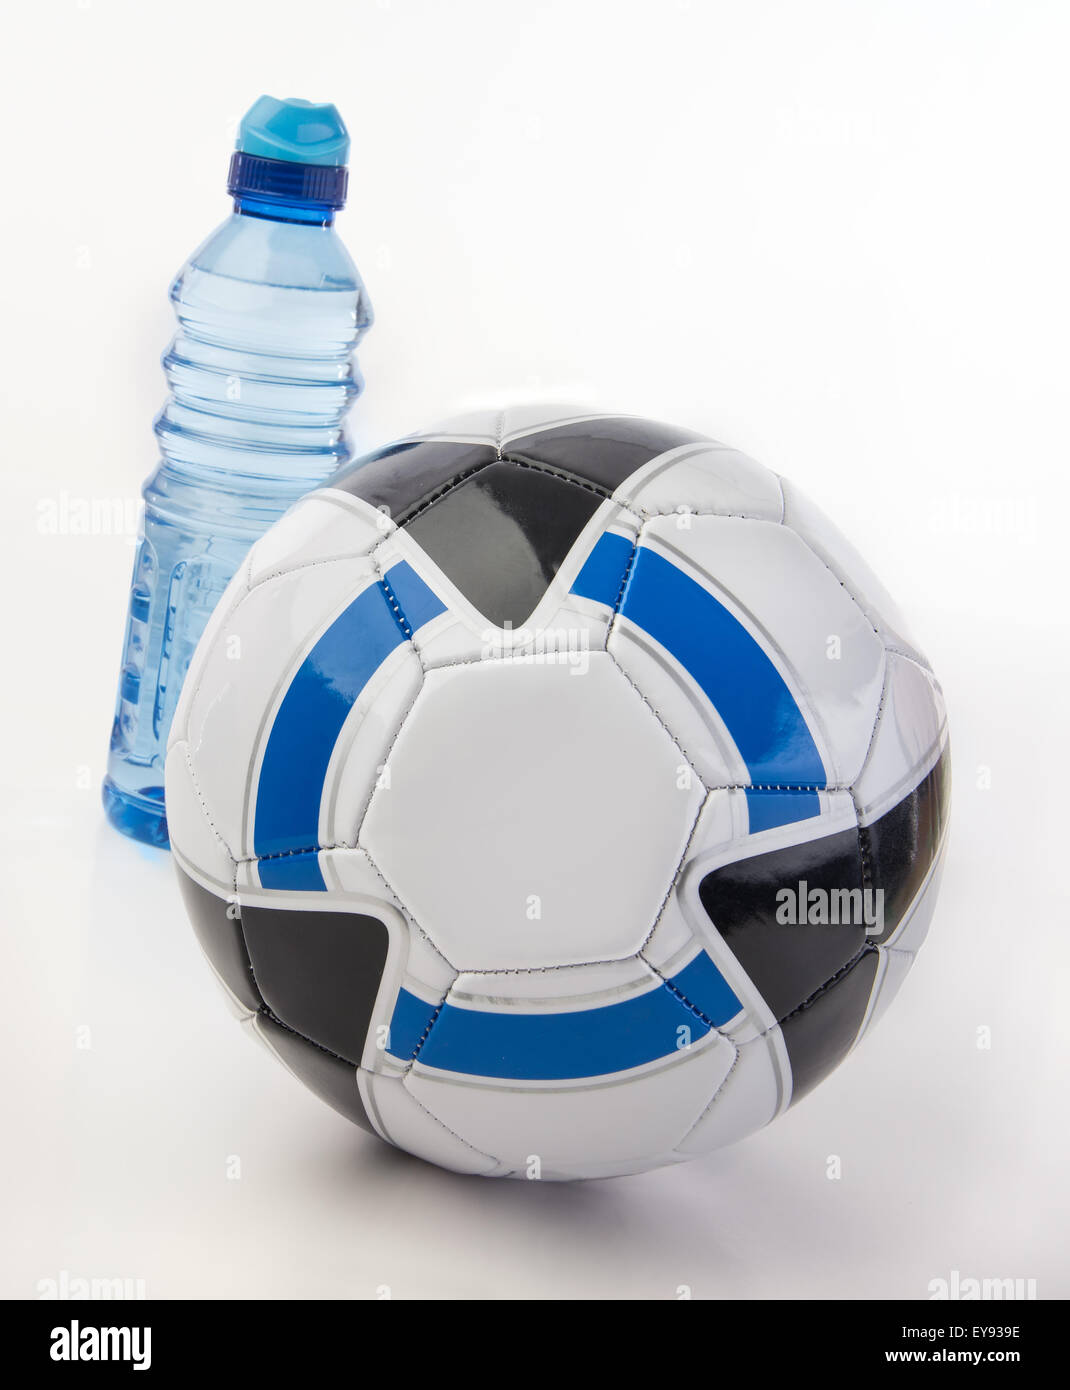 Ballon de soccer et une bouteille d'eau pour l'hydratation Banque D'Images